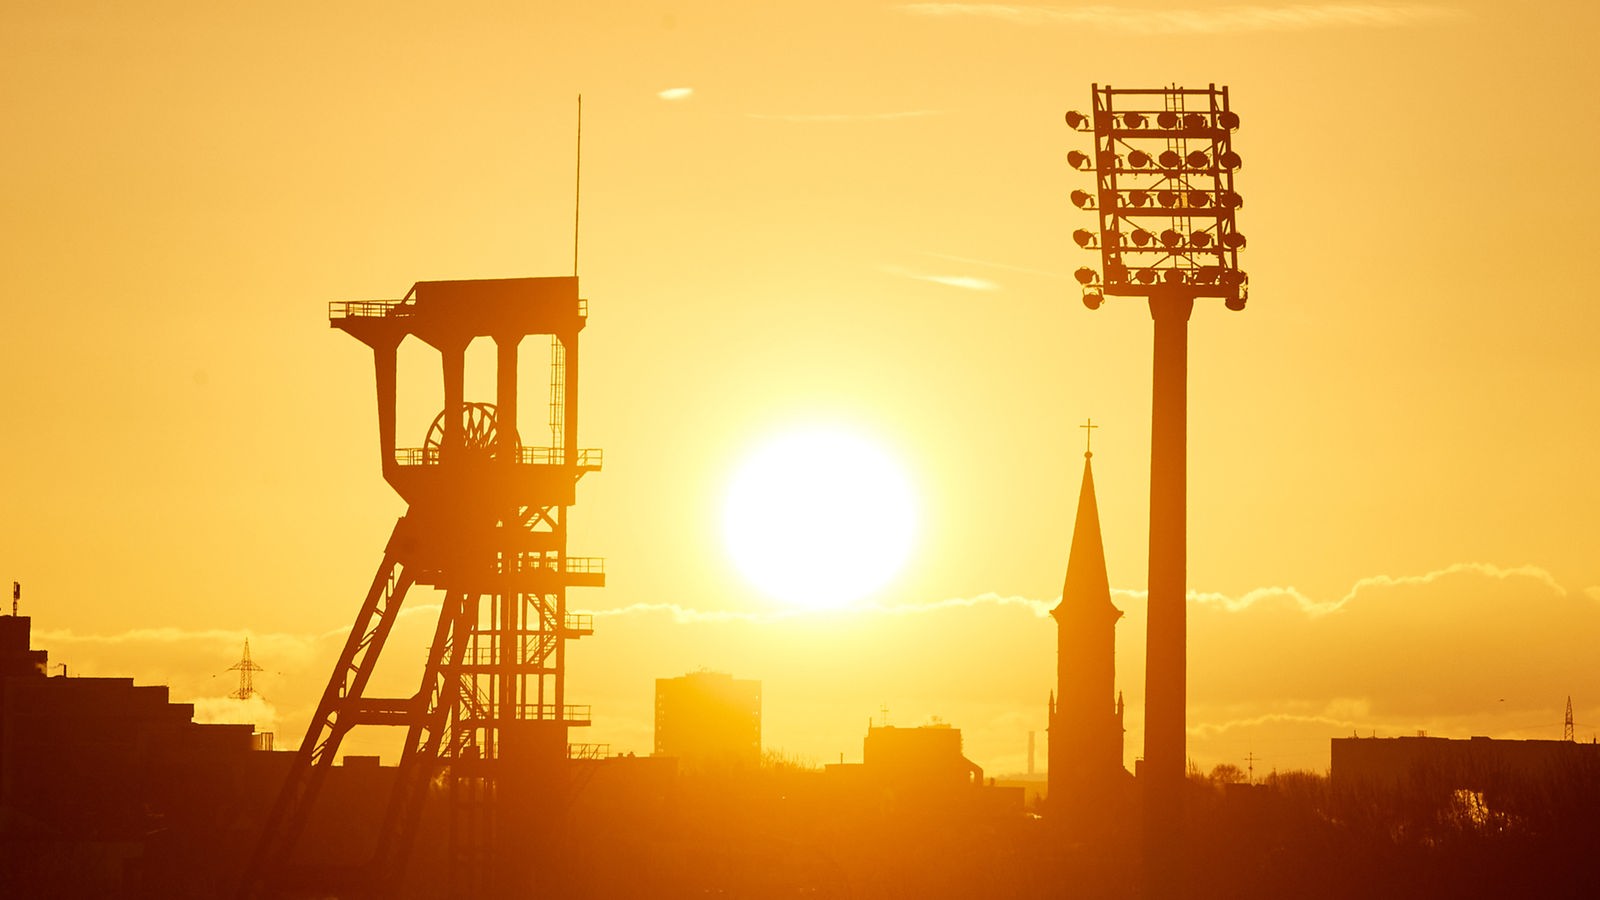 Die Sonne geht über dem Förderturm der Zeche Holland und einem Flutlichtmast des Lohrheidestadion in Bochum auf.